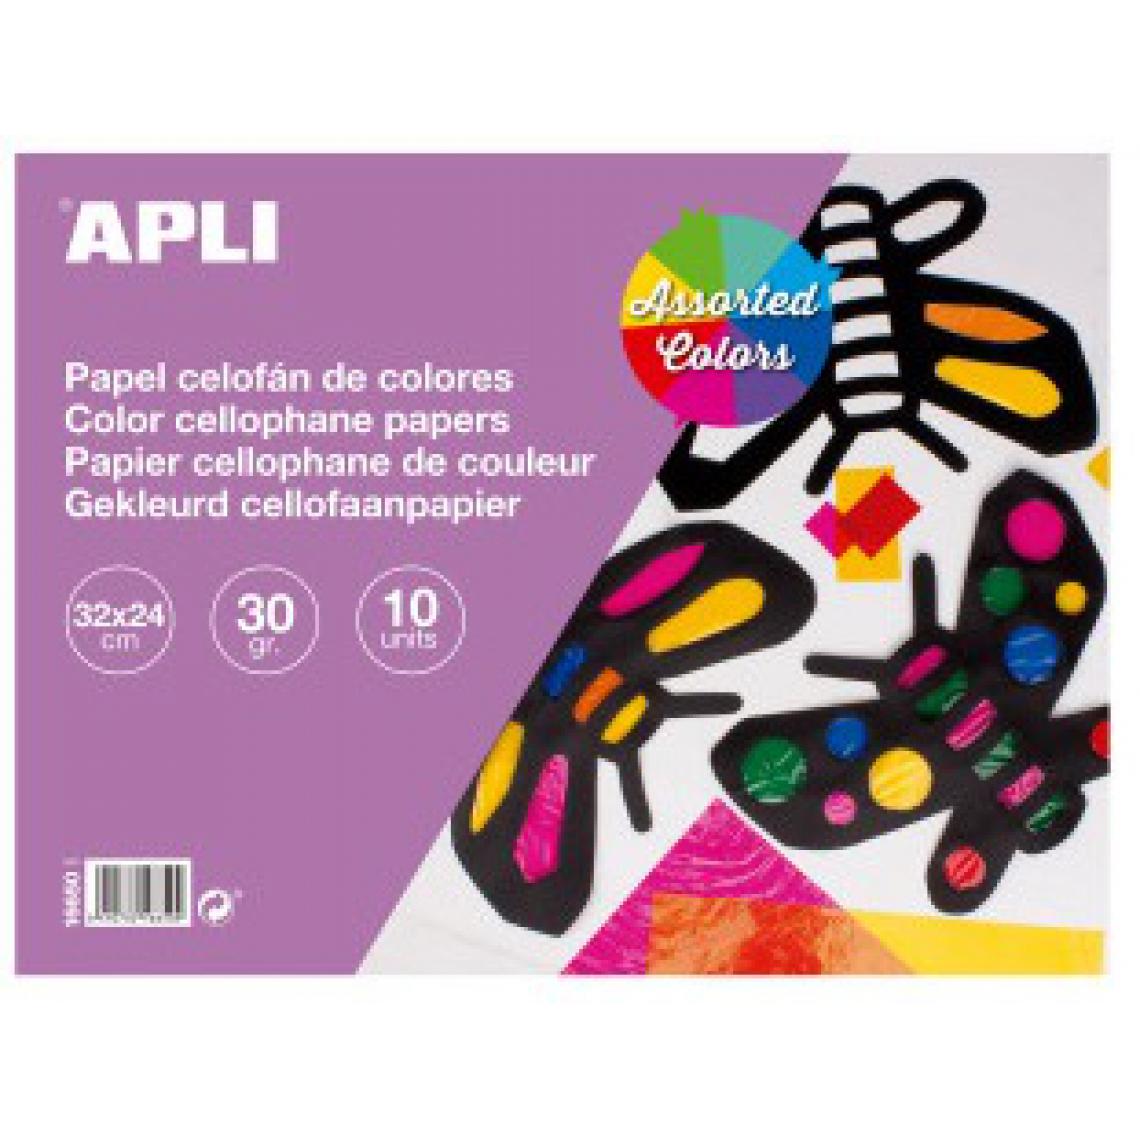 Apli Agipa - Bloc papier cellophane 32x24cm - Dessin et peinture